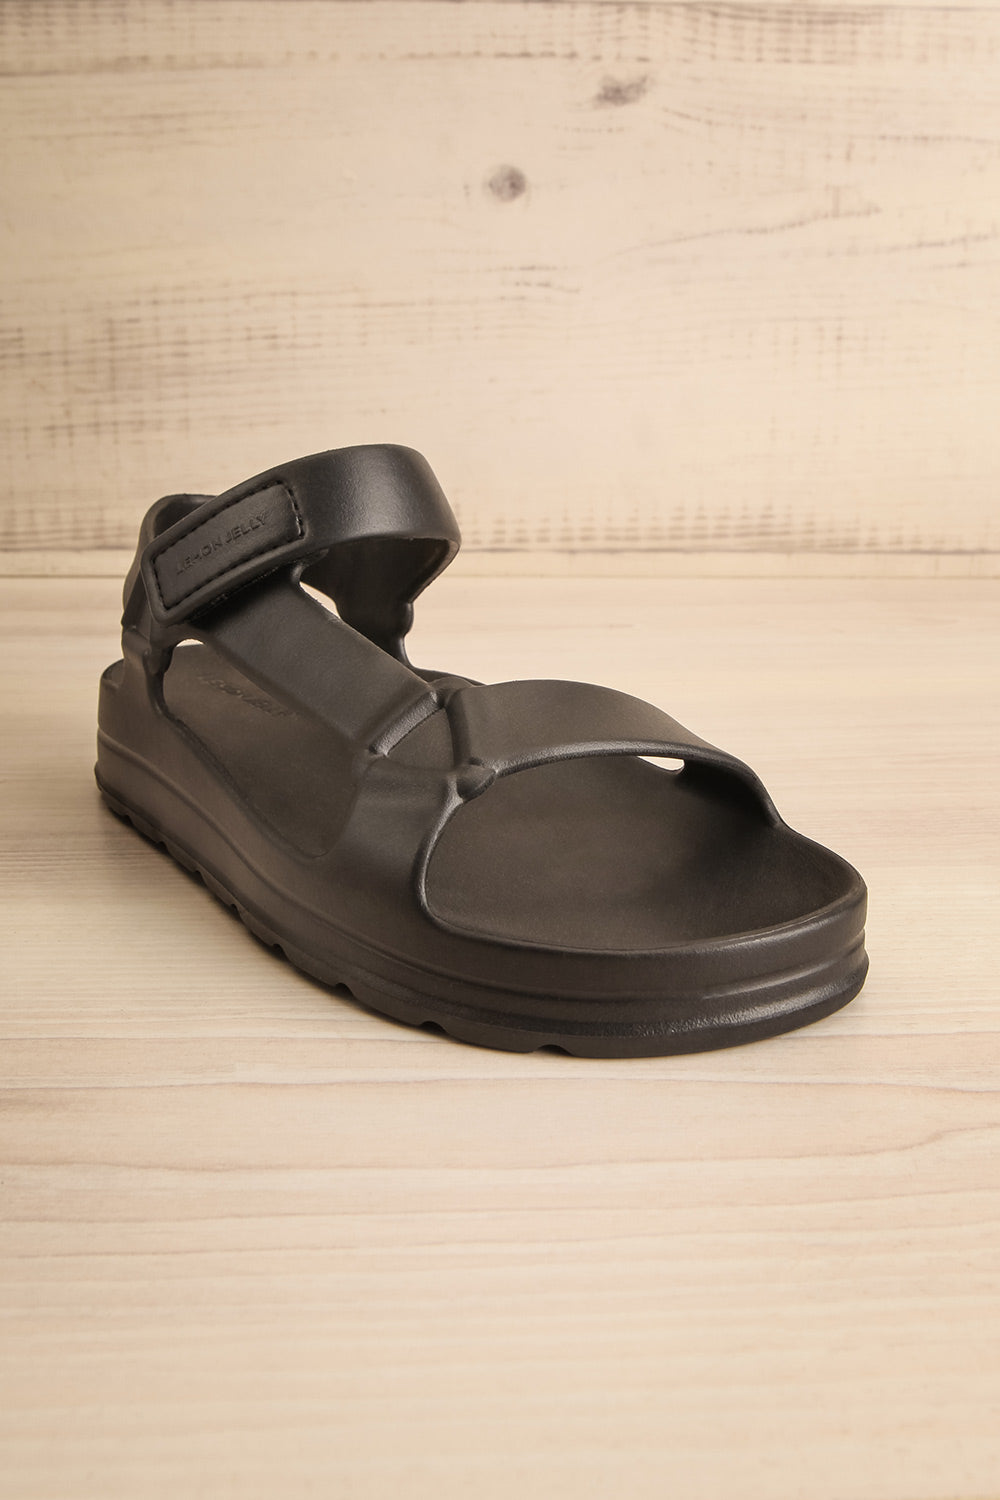 Nollah Black Sandals w/ Velcro Closure | La petite garçonne front view